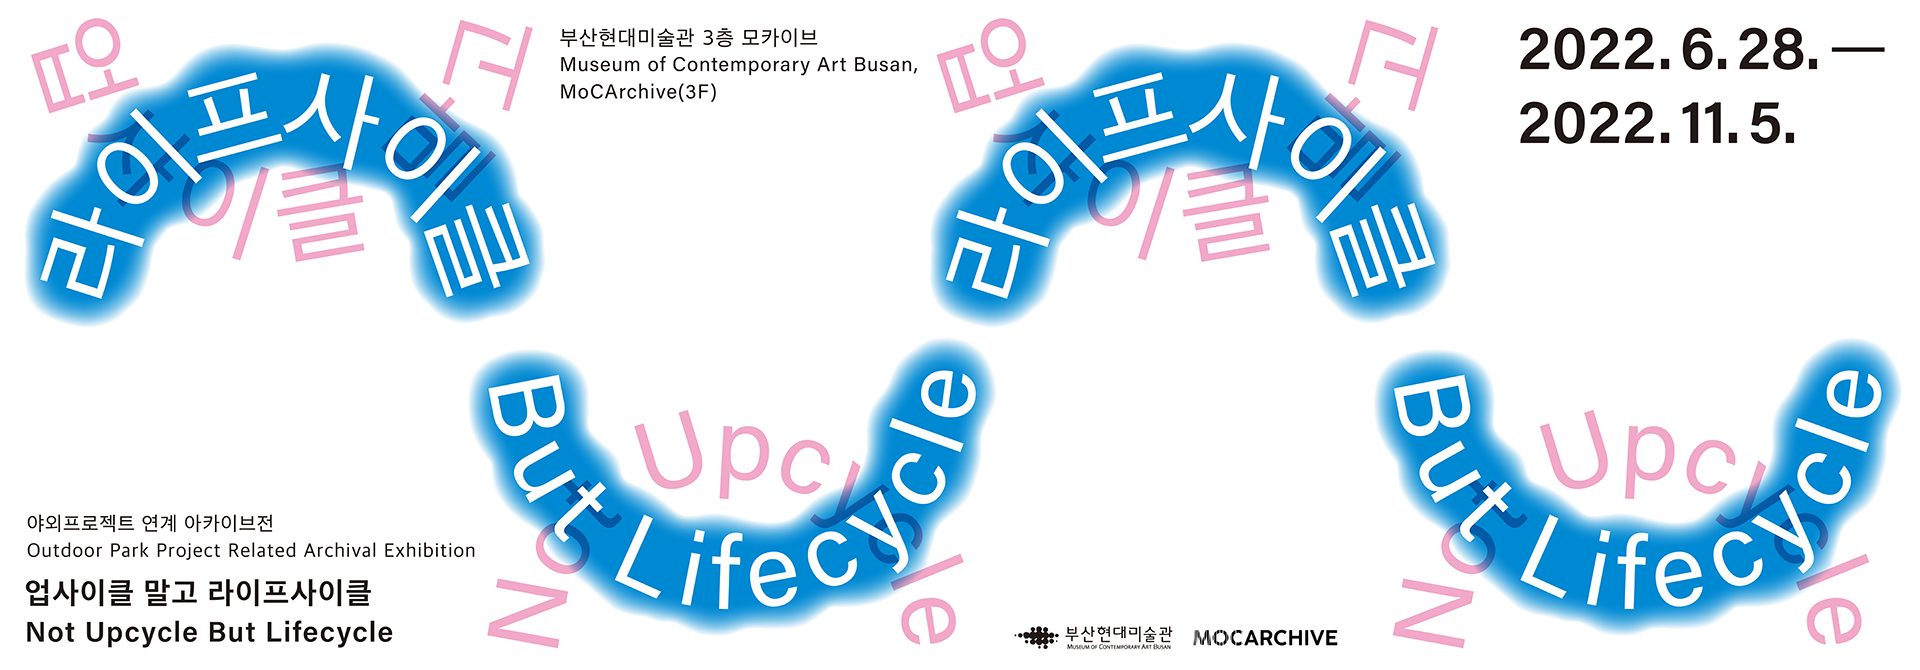 부산현대미술관 3층 모카이브.Museum of Contemporary Art Busan, MoCArchive(3F). 2022.6.28~2022.11.5. 업사이클 말고 라이프사이클. 야외프로젝트 연계 아카이브전. Outdoor Park Project Related Archival Exhibition. 업사이클 말고 라이프사이클. Not Upcycle But Lifecycle.